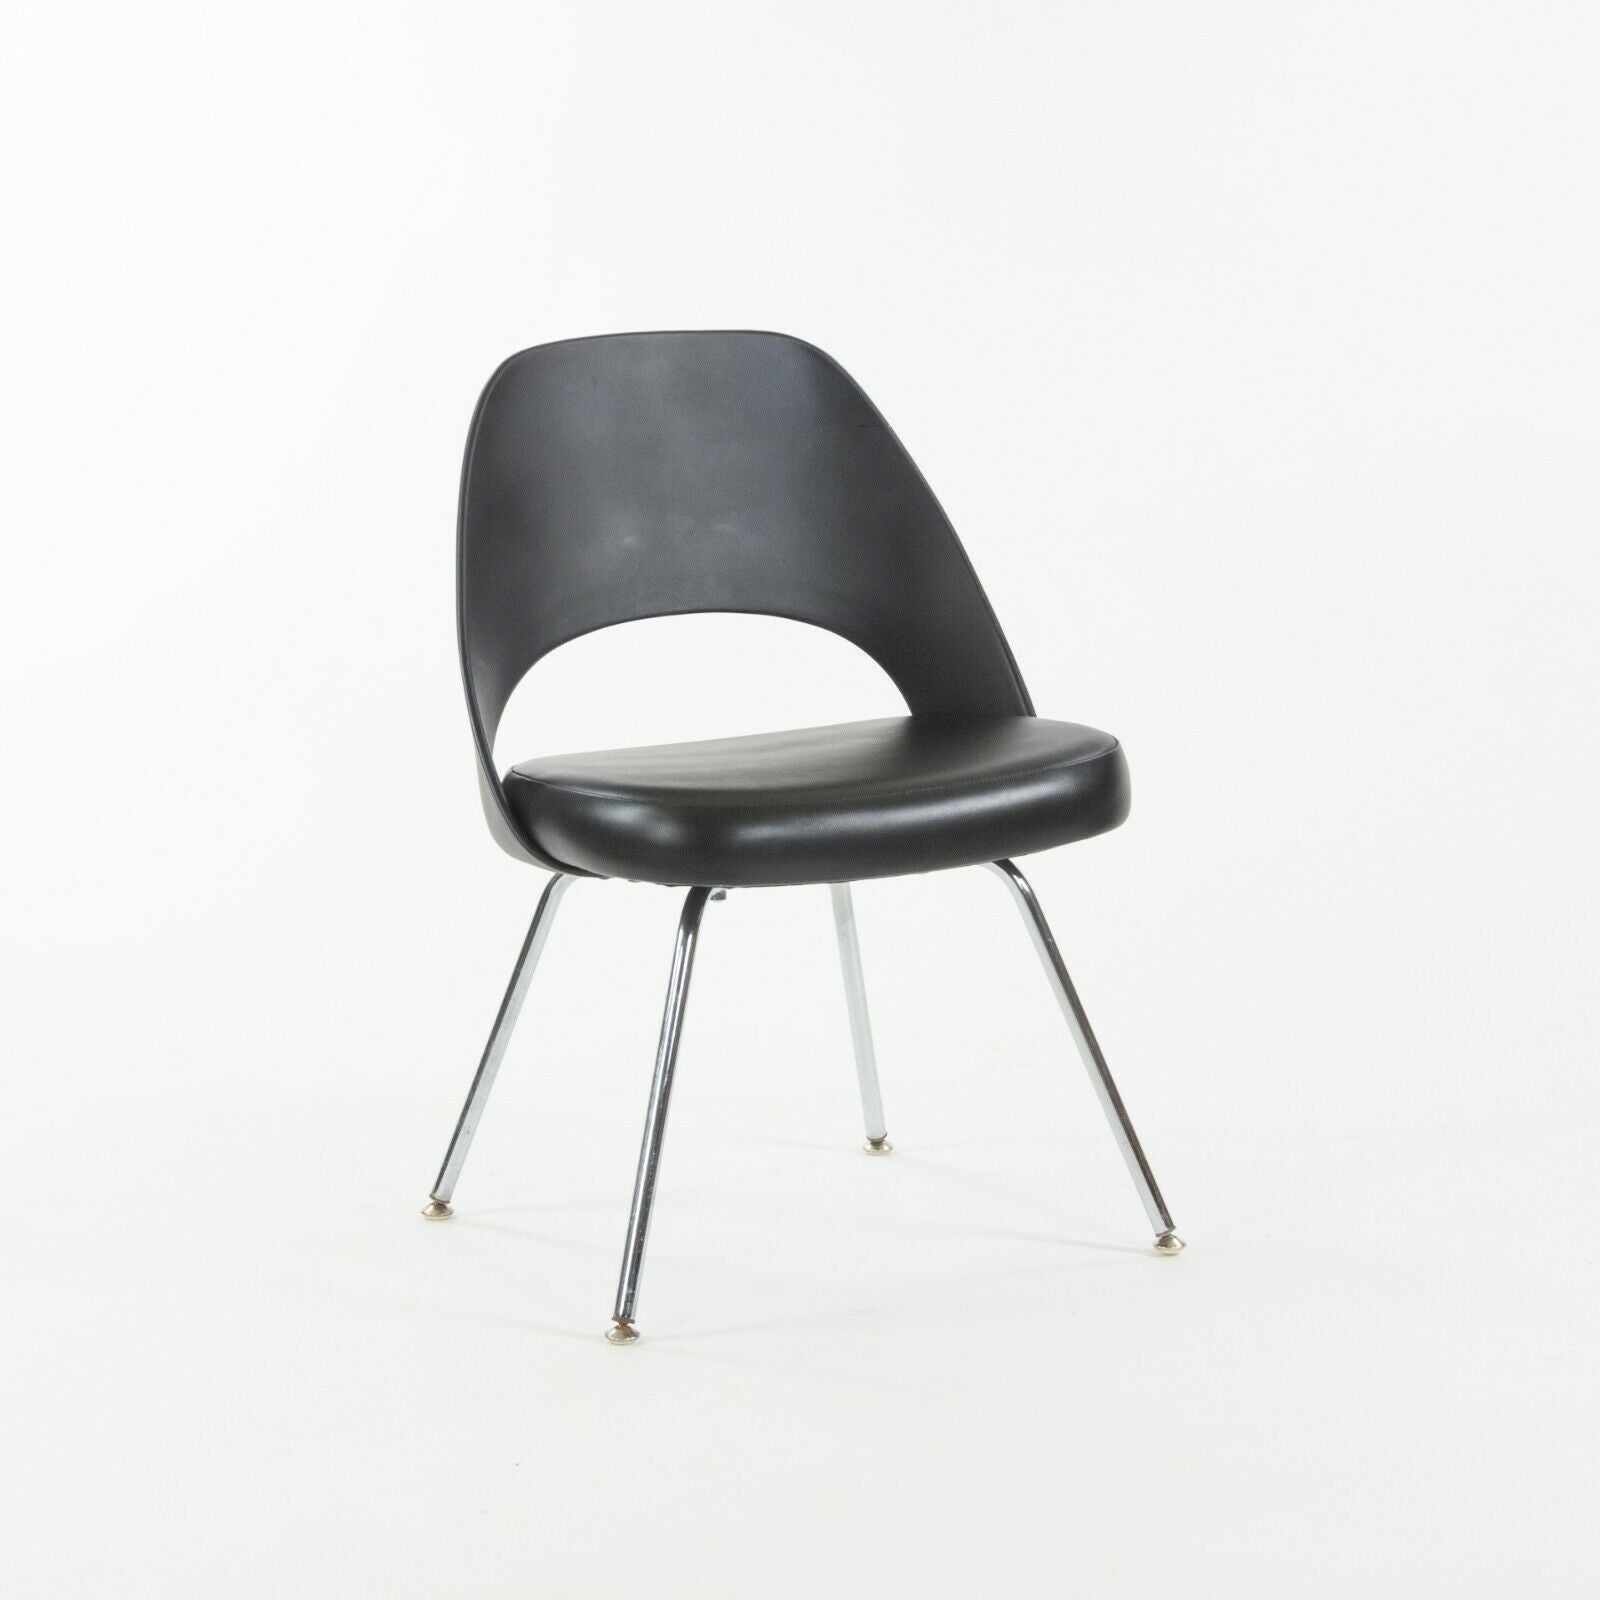 2014 Eero Saarinen for Knoll Executive Armless Dining Chair Black with Chrome